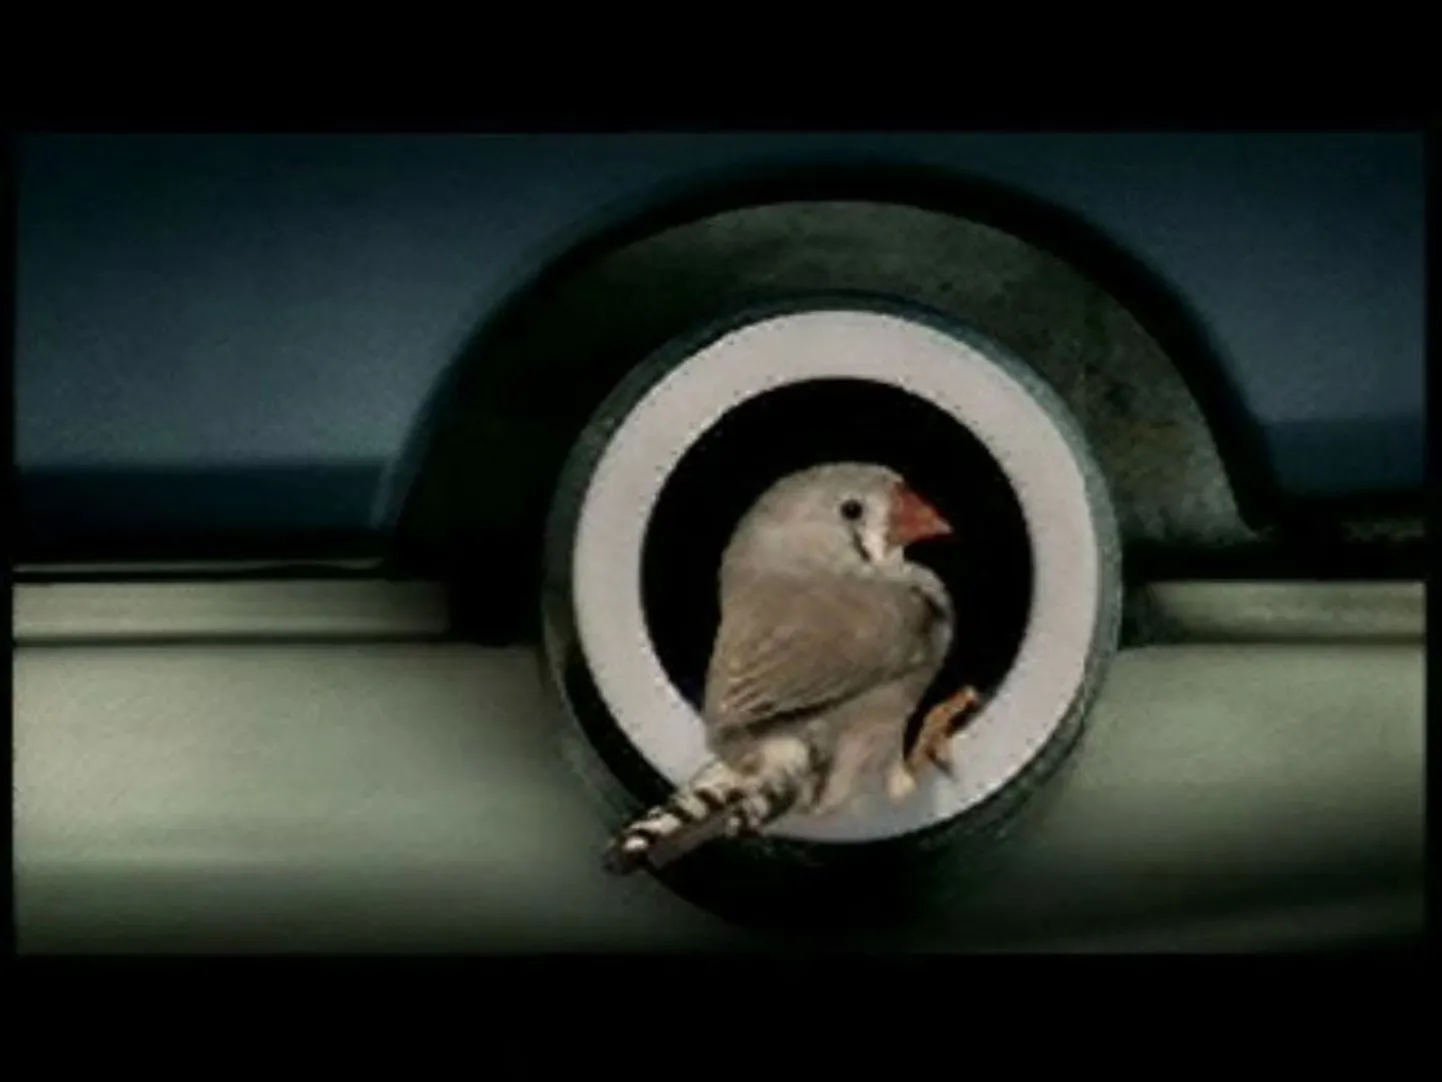 Statoili väävlivaba kütust reklaamivad linnud läbisid nädalase treeningu, et korralikult sumbutit kujutavast torust sisse ja välja lennata.